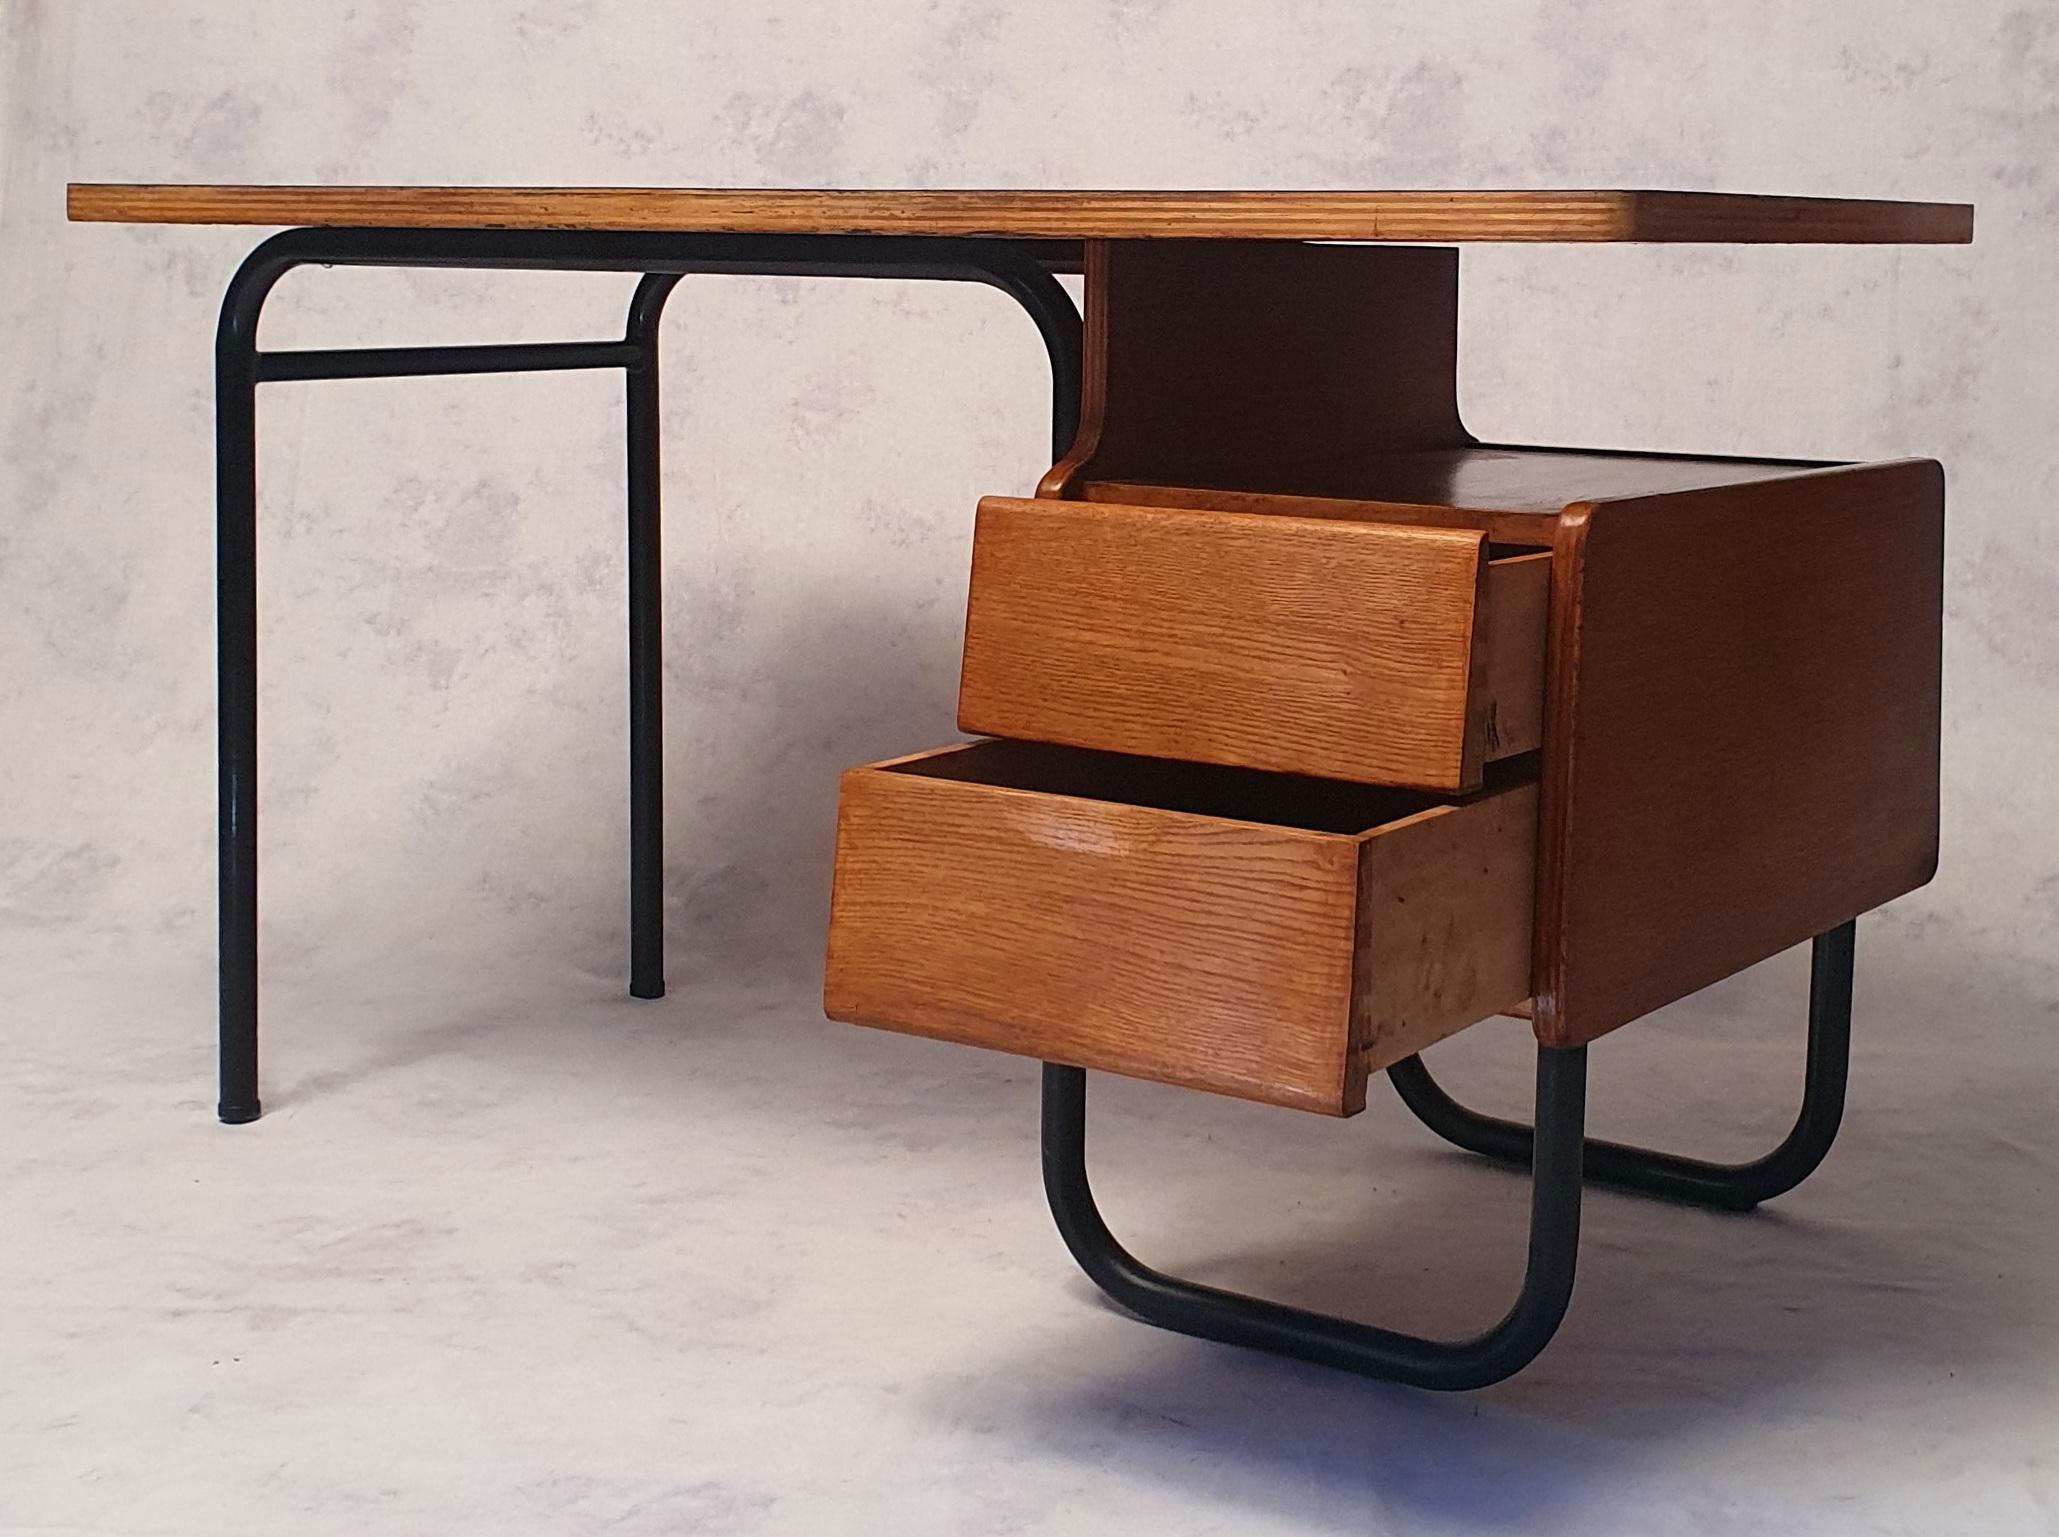 Bureau moderniste du designer français Robert Charroy produit par Mobilor au milieu des années 1950 (1955-1956). Cette série de meubles a été choisie pour équiper la résidence universitaire Jean Zay dans la ville d'Antony. Cette résidence a été